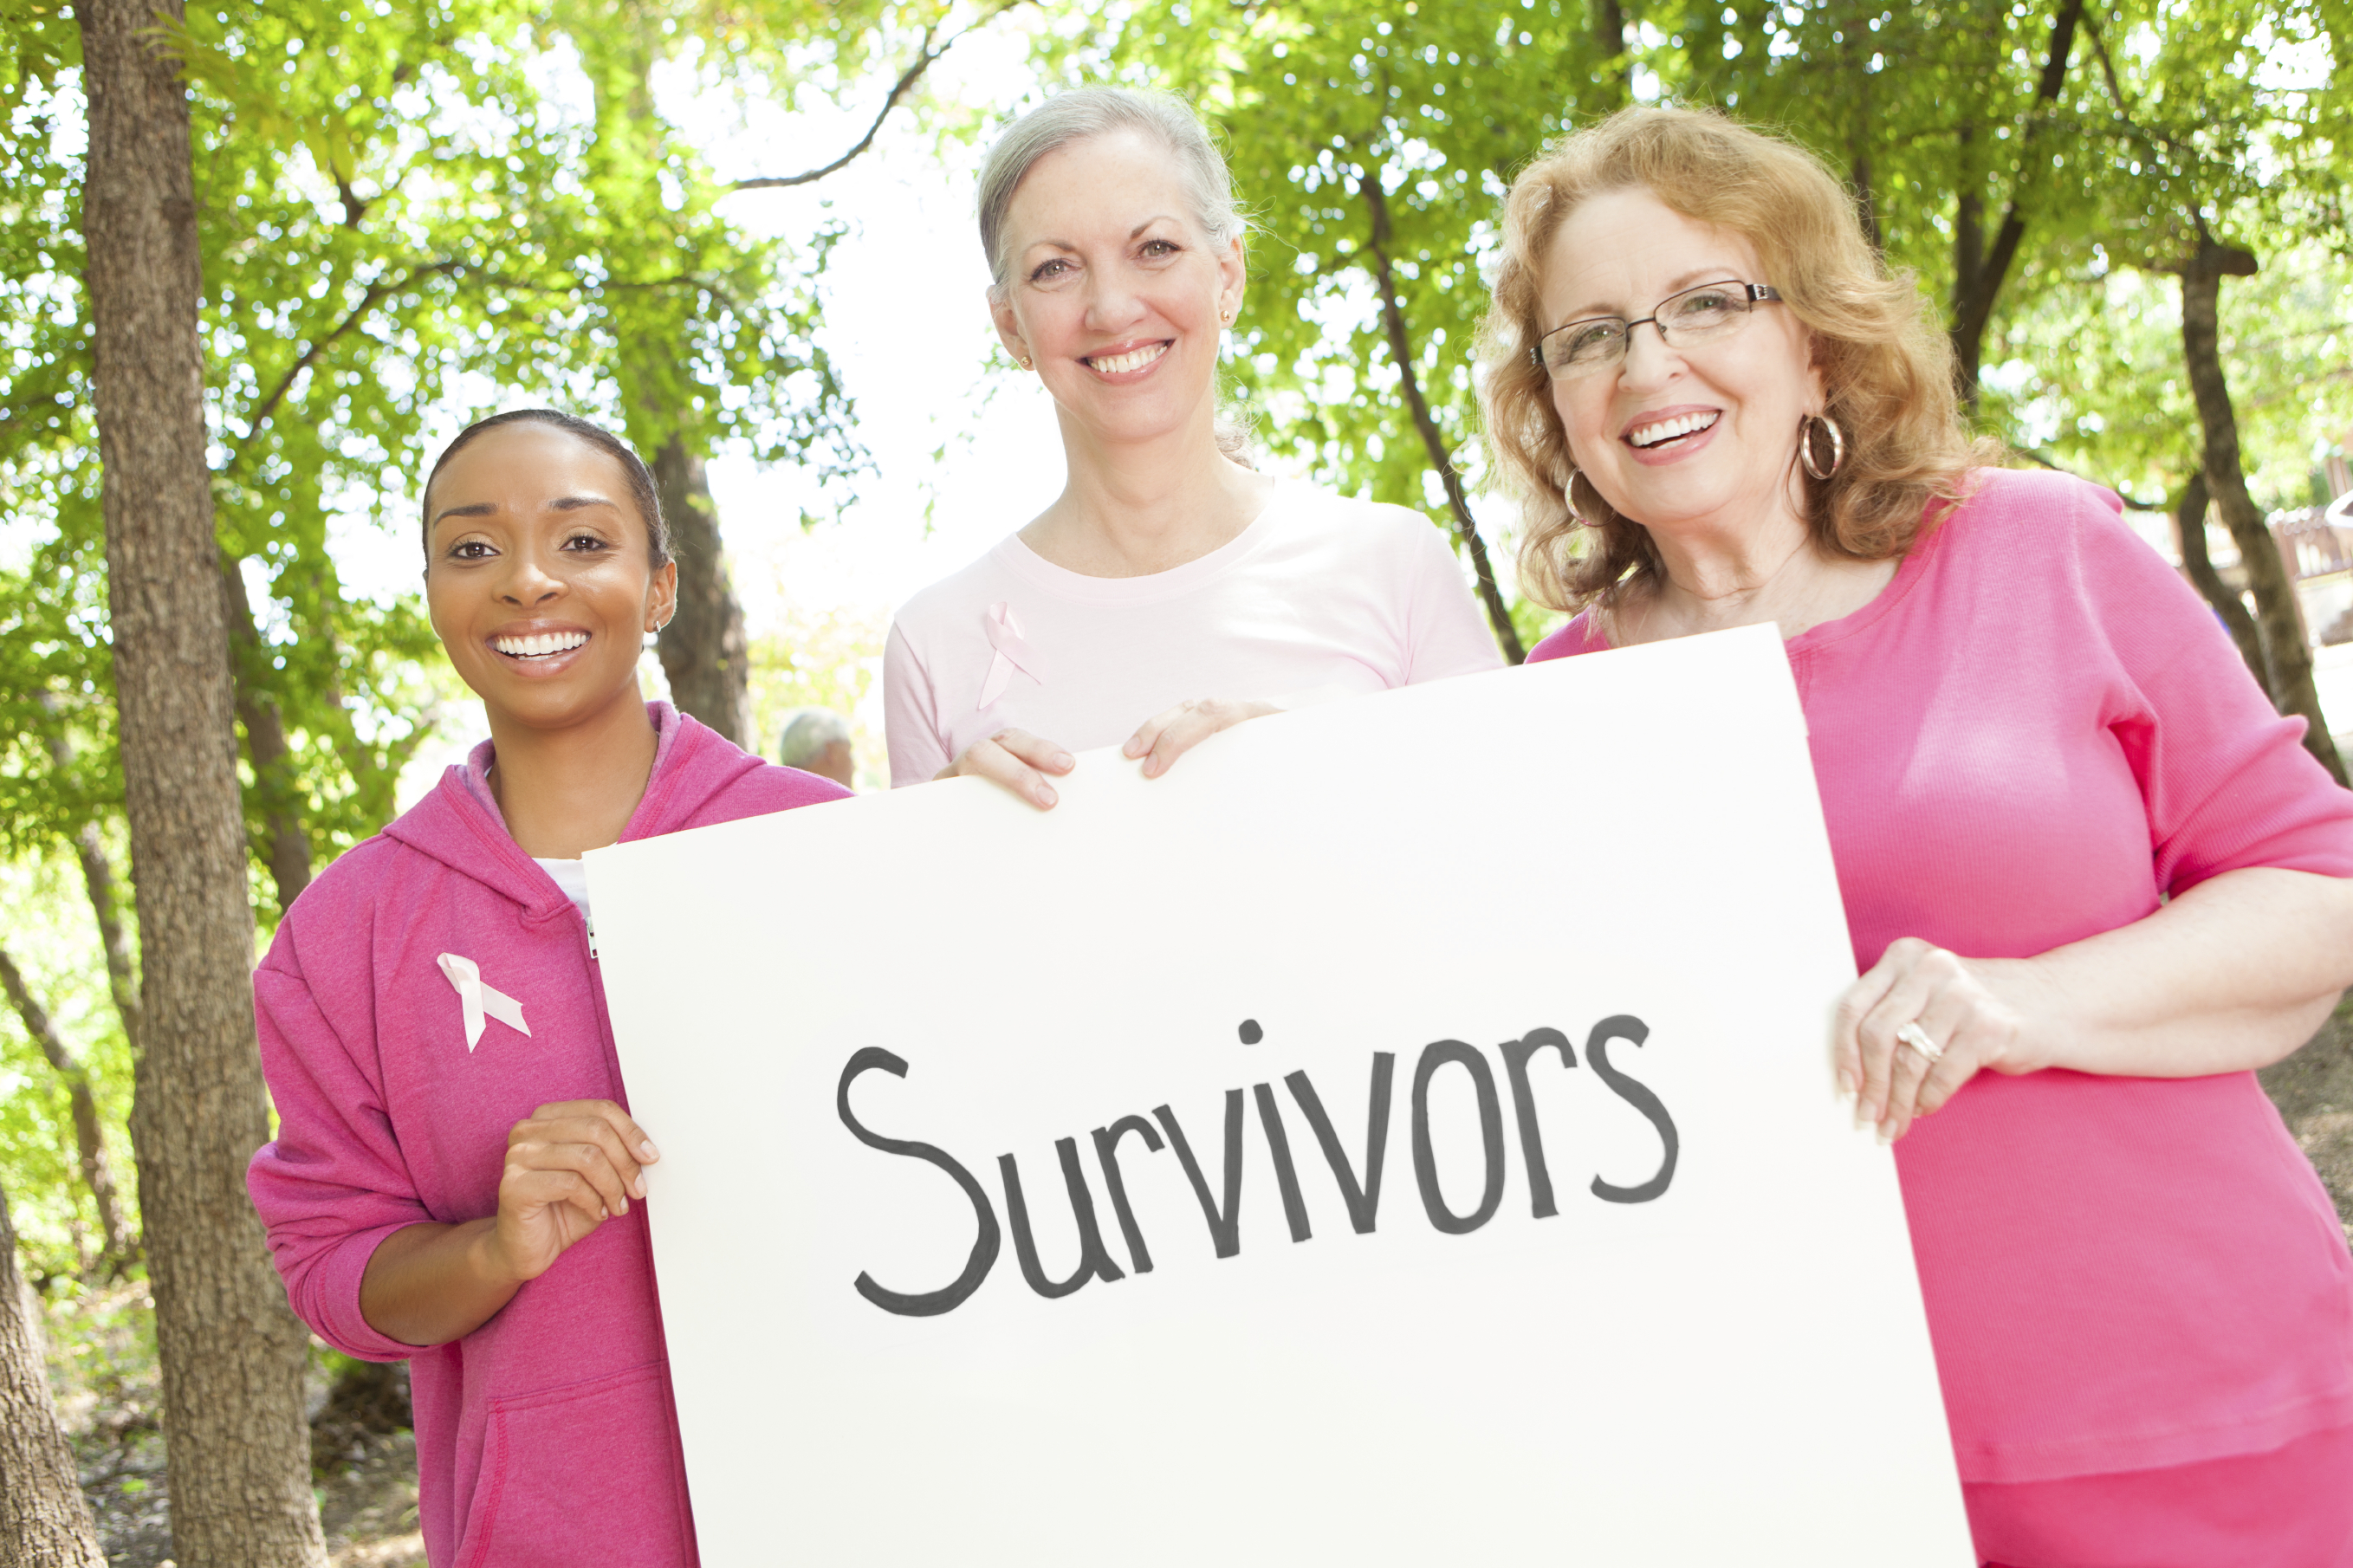 breast cancer survivors உலக புற்றுநோய் தினம்:புற்றுநோய் மருத்துவத்தில் புதிய கண்டுபிடிப்பு-வியக்க வைக்கும் ஆய்வு முடிவுகள்